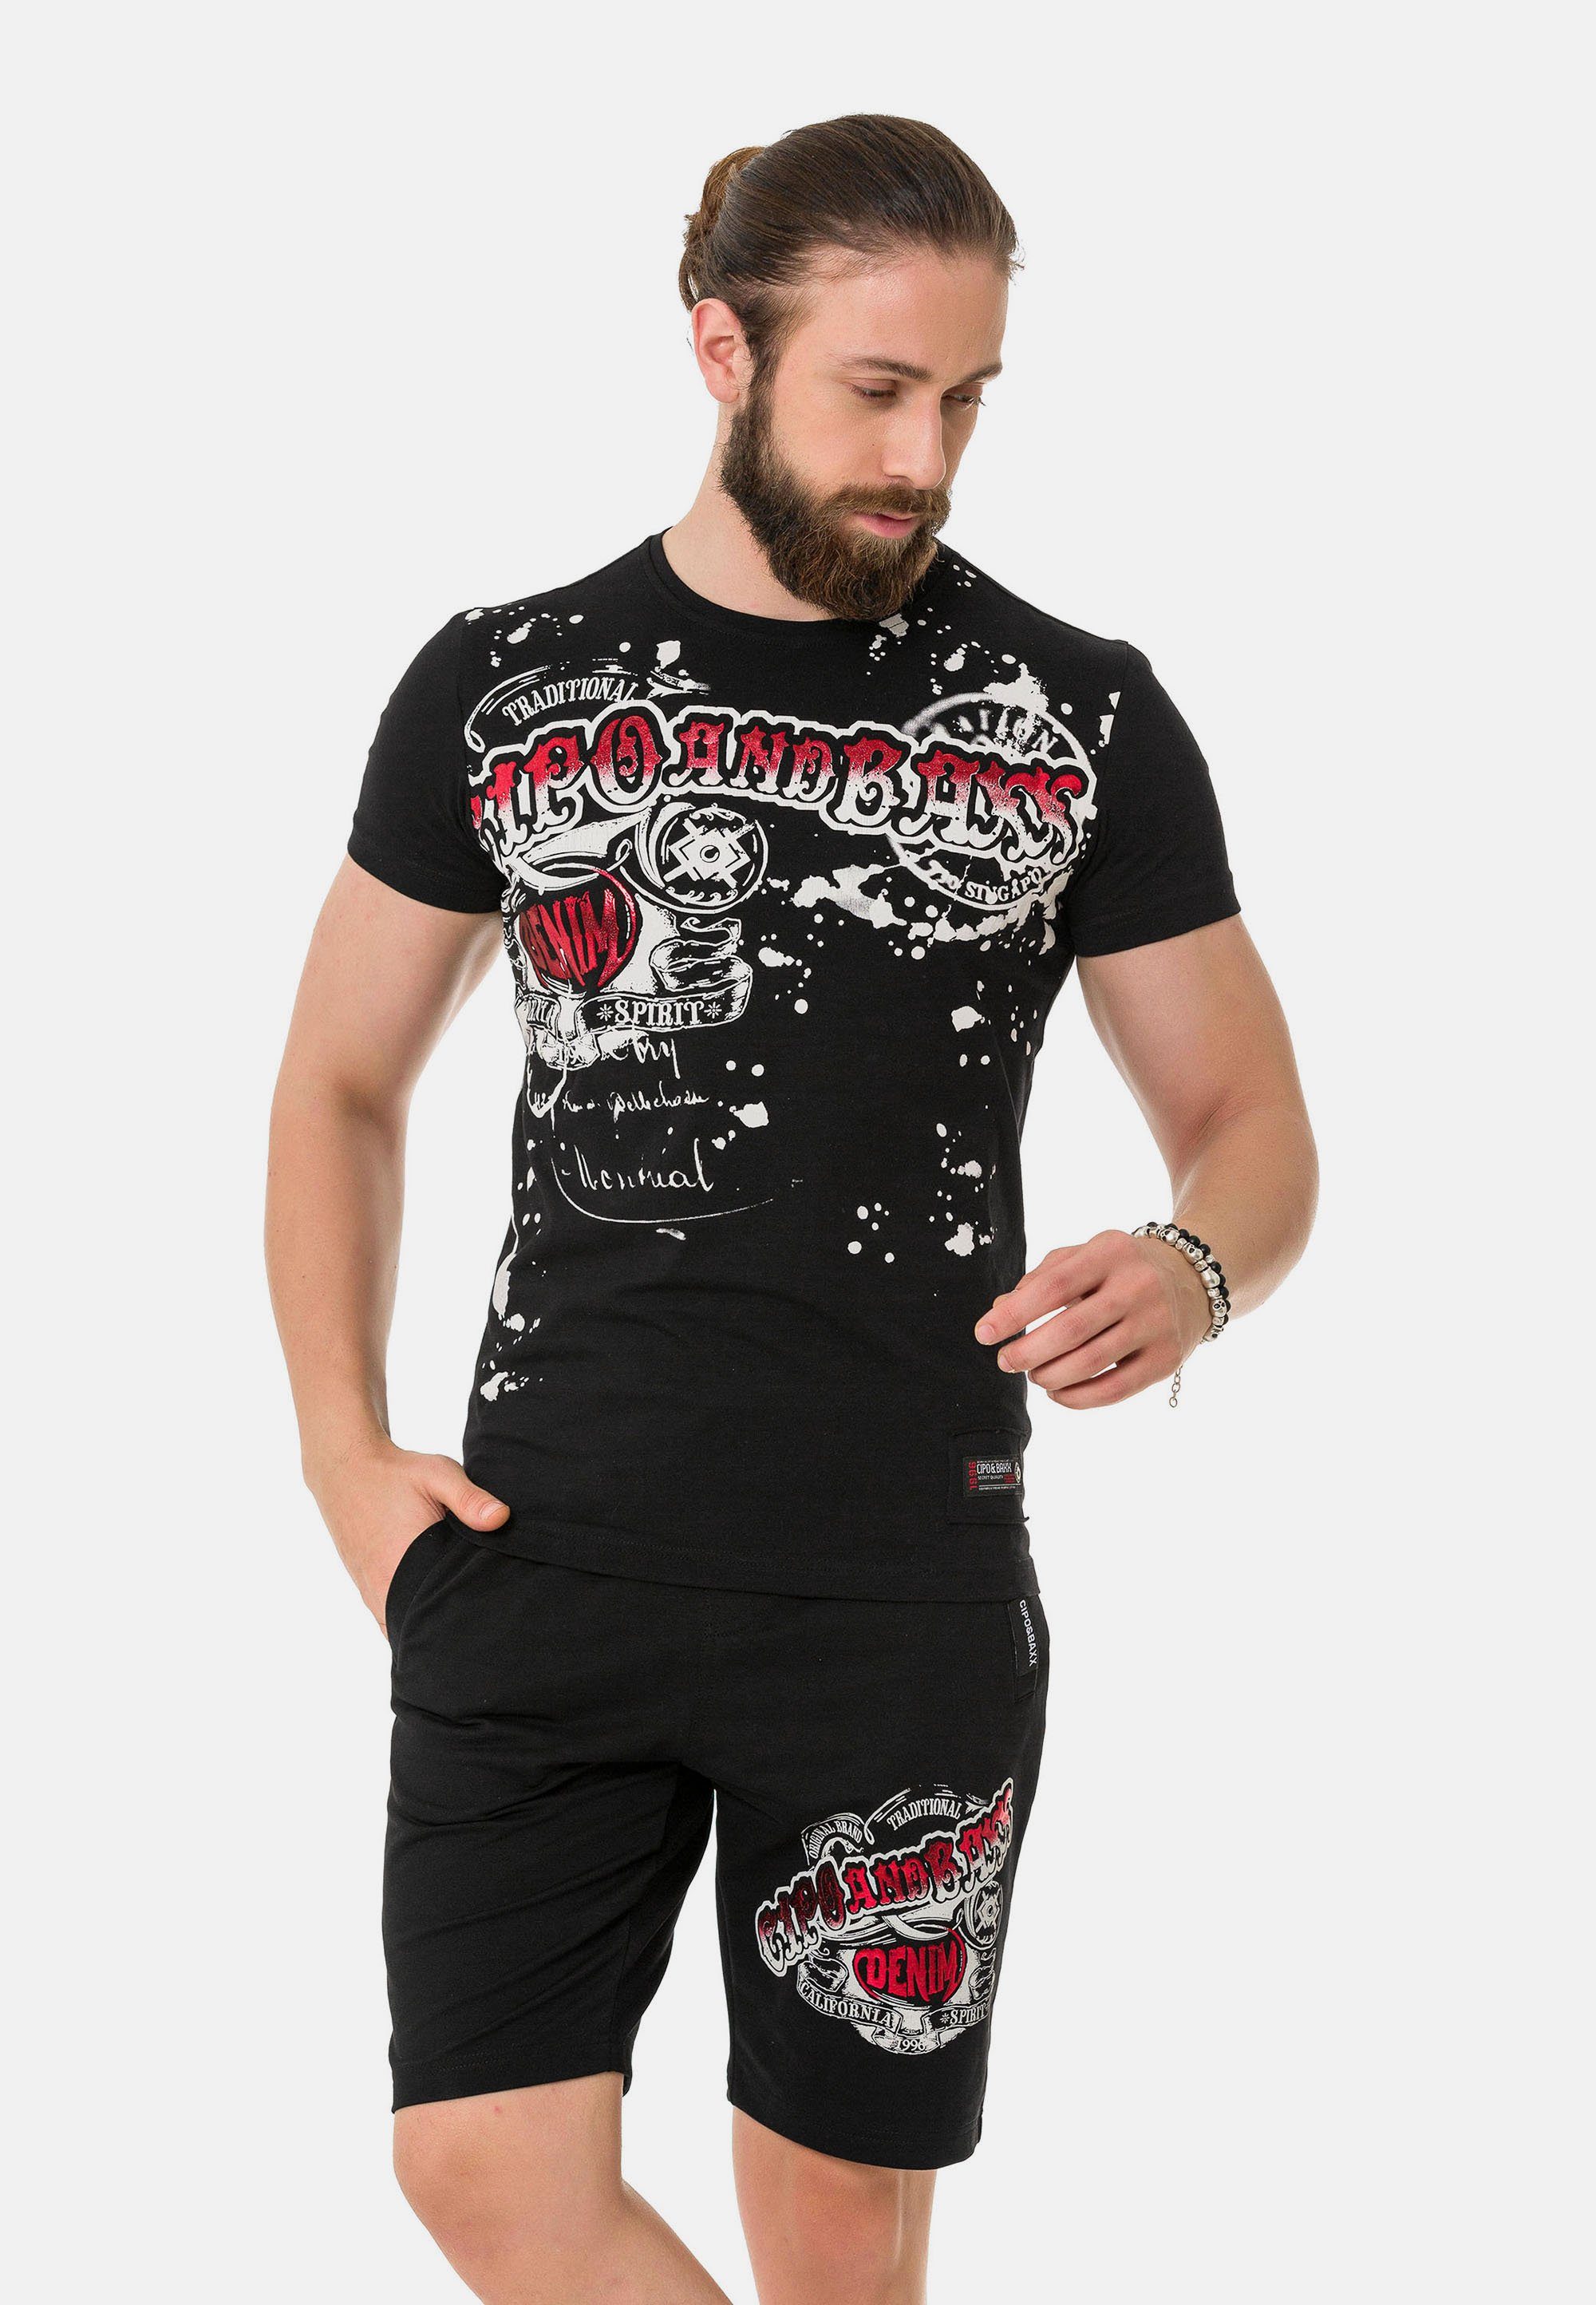 Cipo & schwarz coolem Baxx mit T-Shirt Markenprint